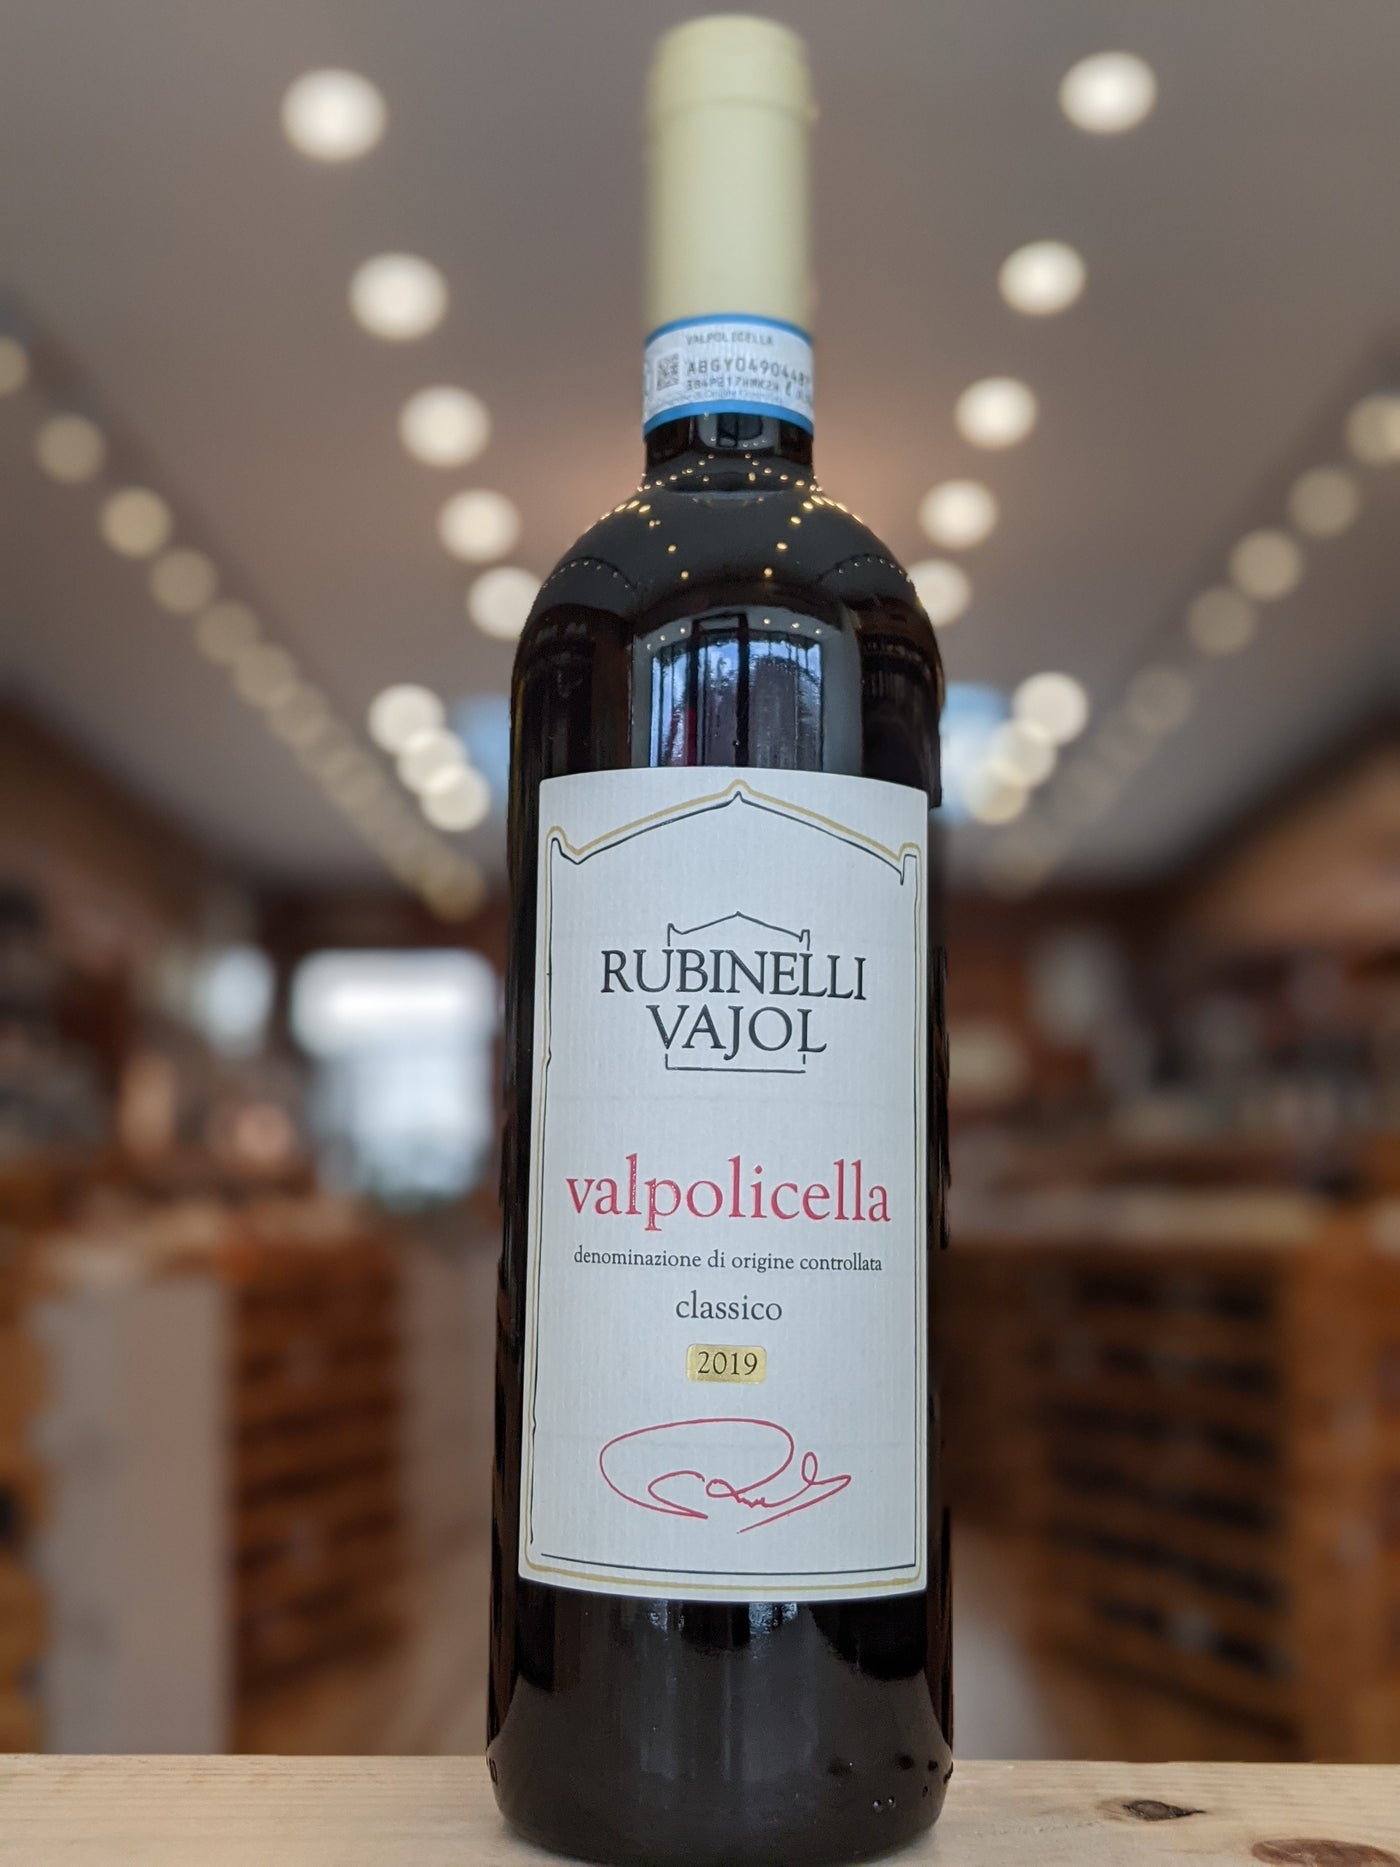 Rubinelli Vajol Valpolicella Classico DOC 2019